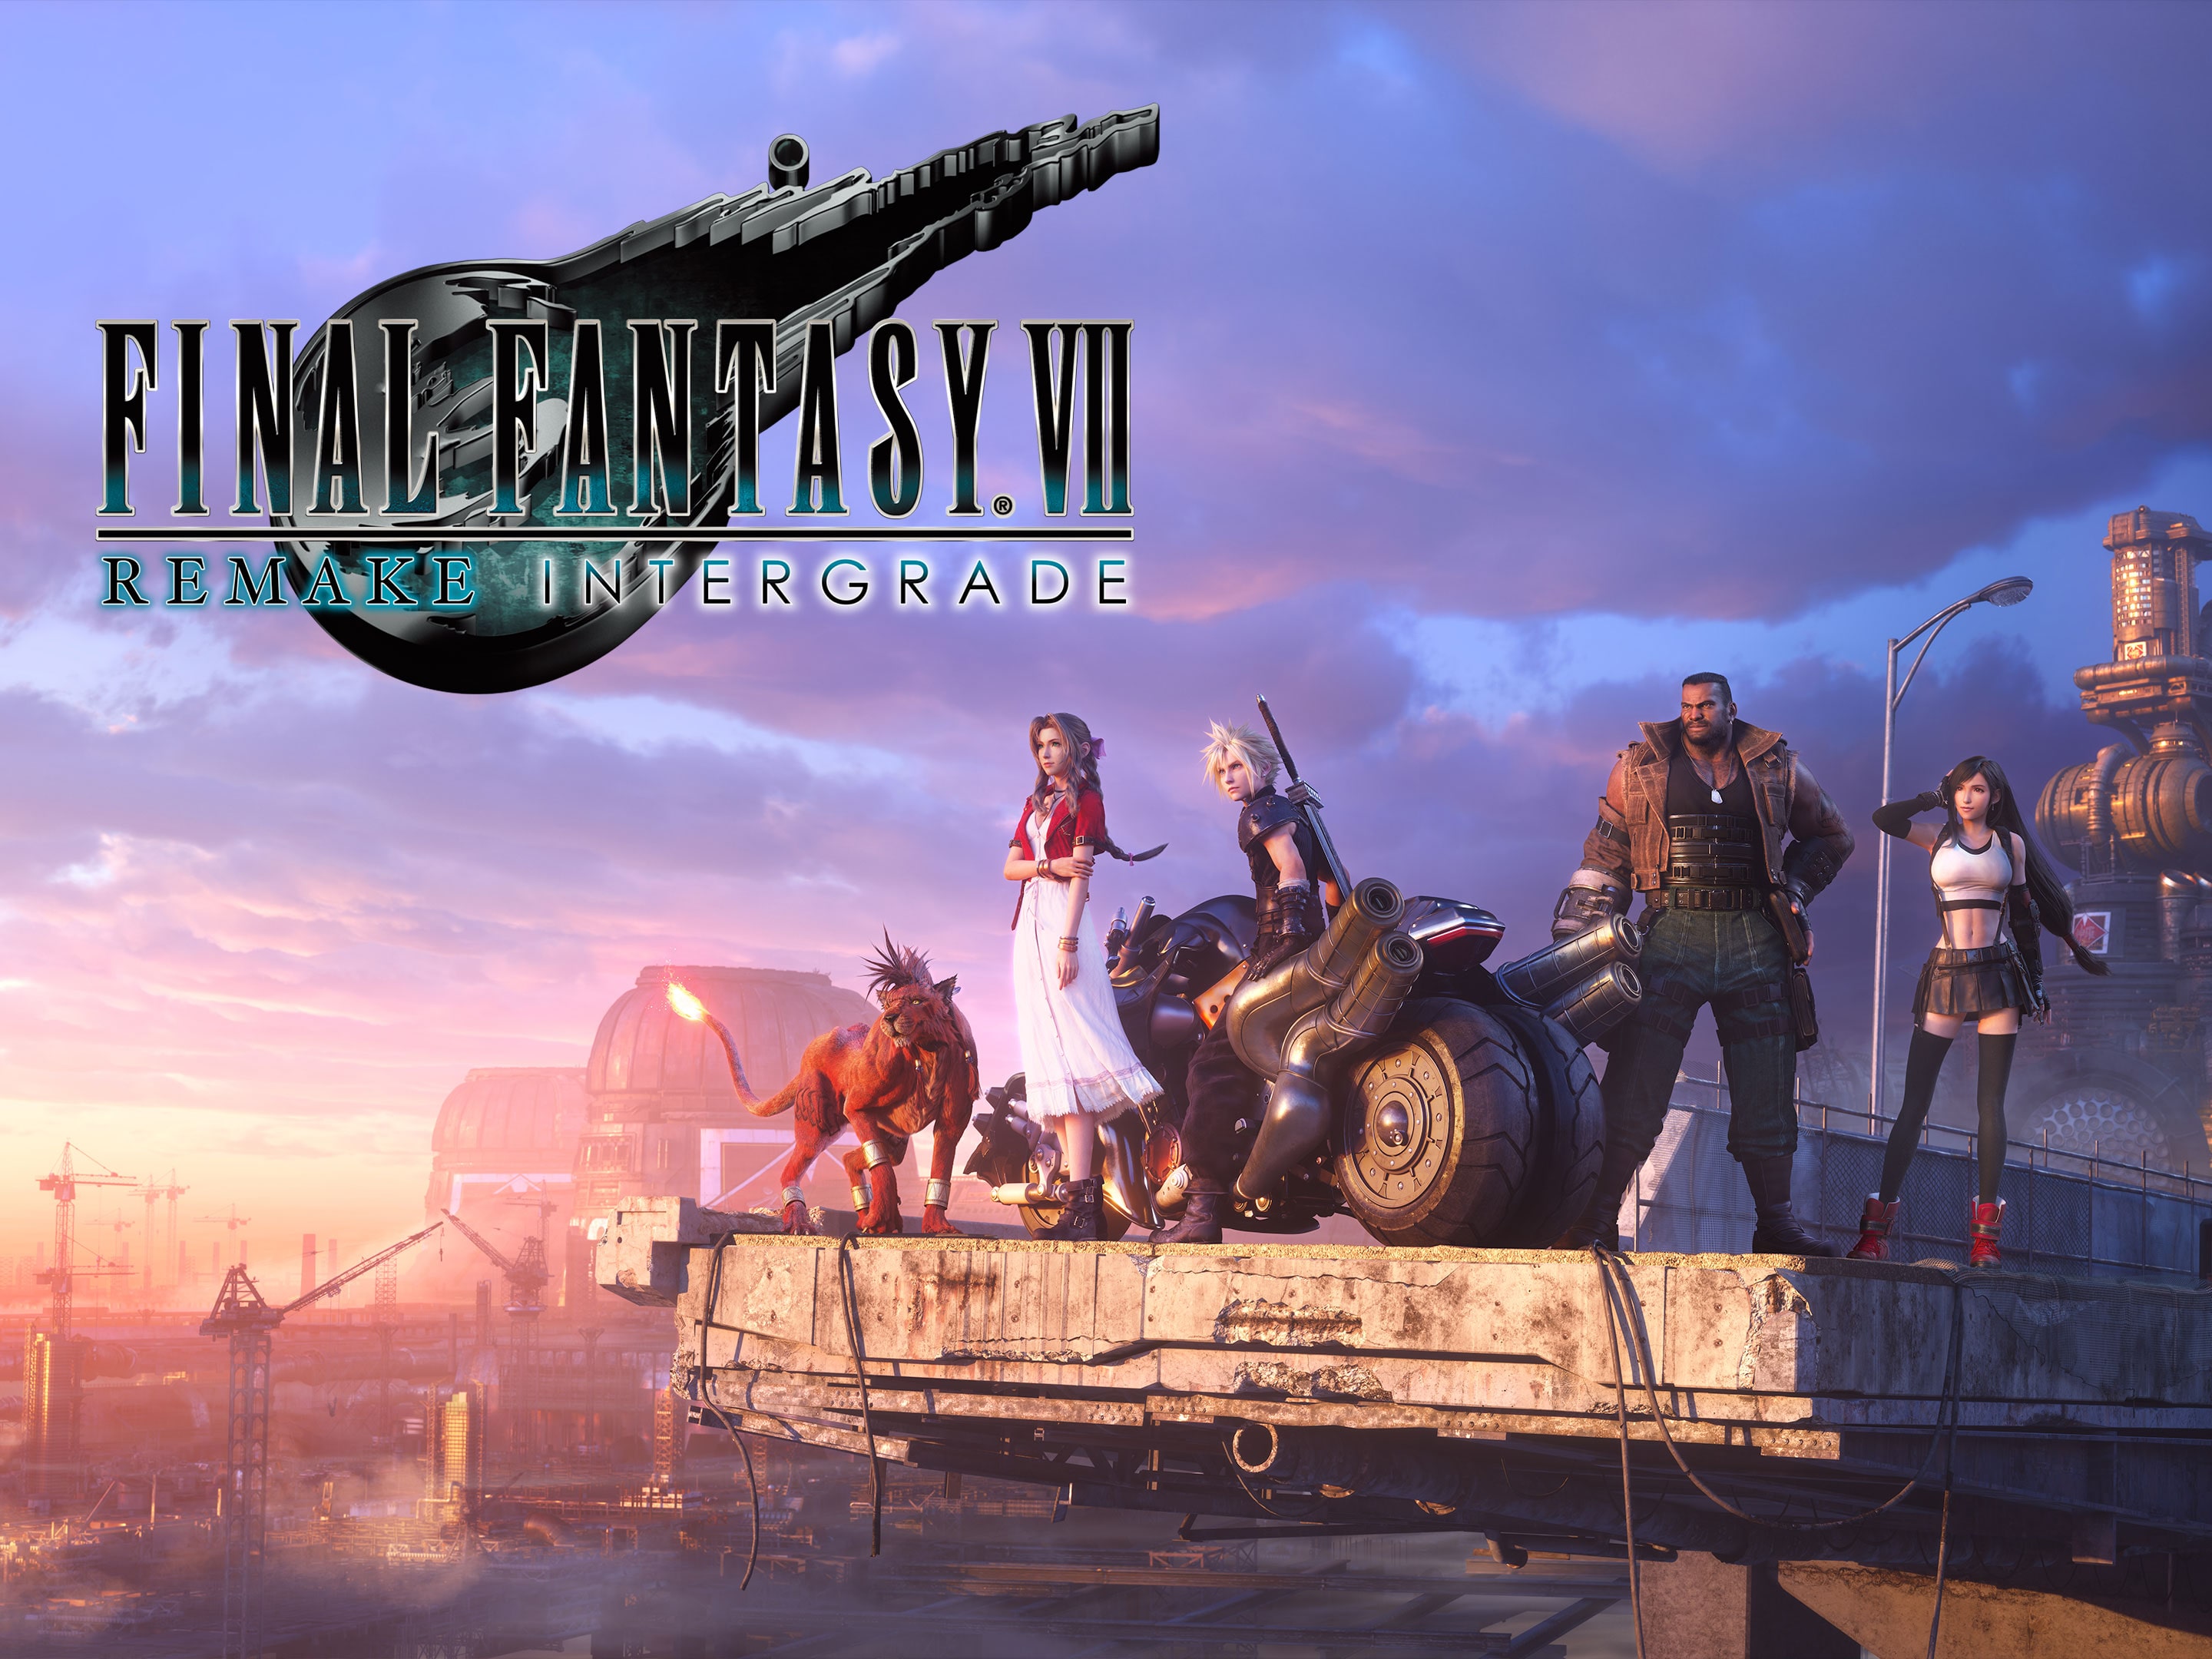 Final Fantasy VII Remake - PS4 Games